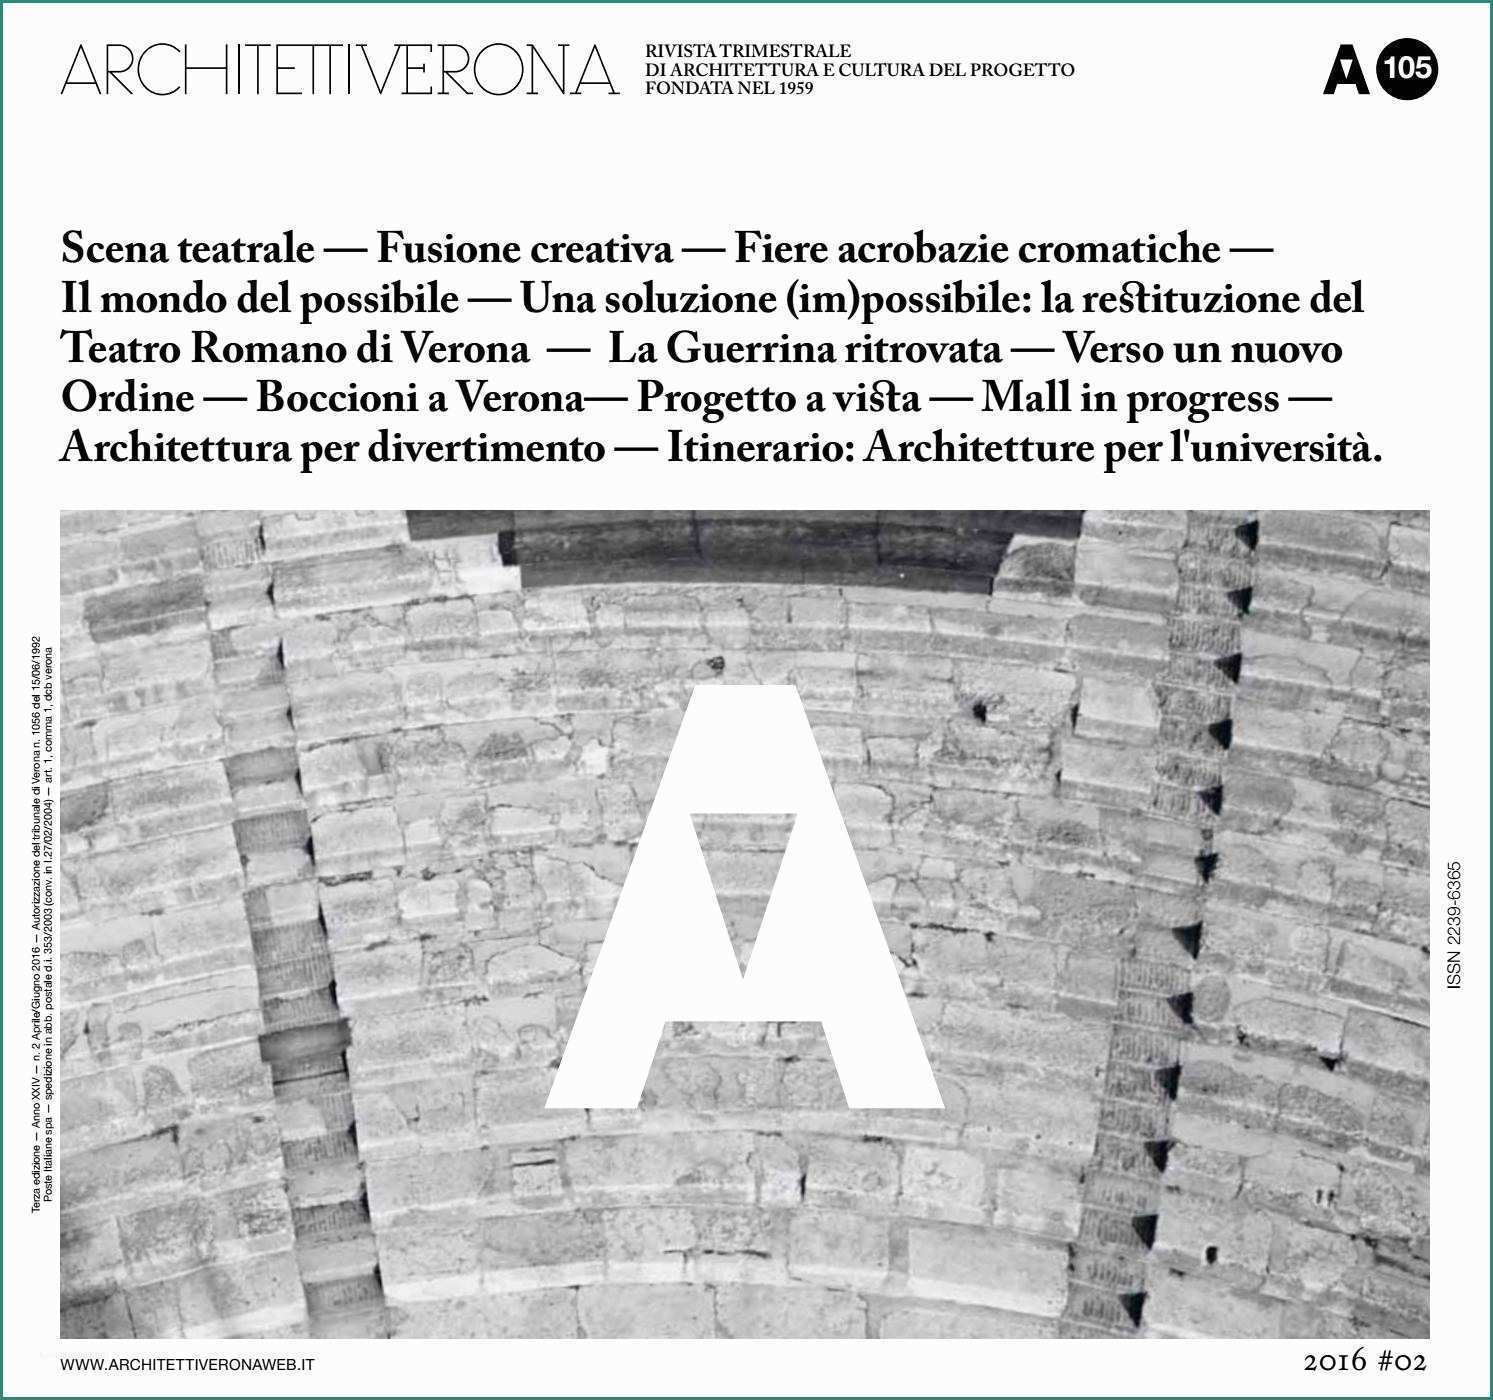 Progetto Appartamento Mq E Architettiverona 105 by Architettiverona issuu